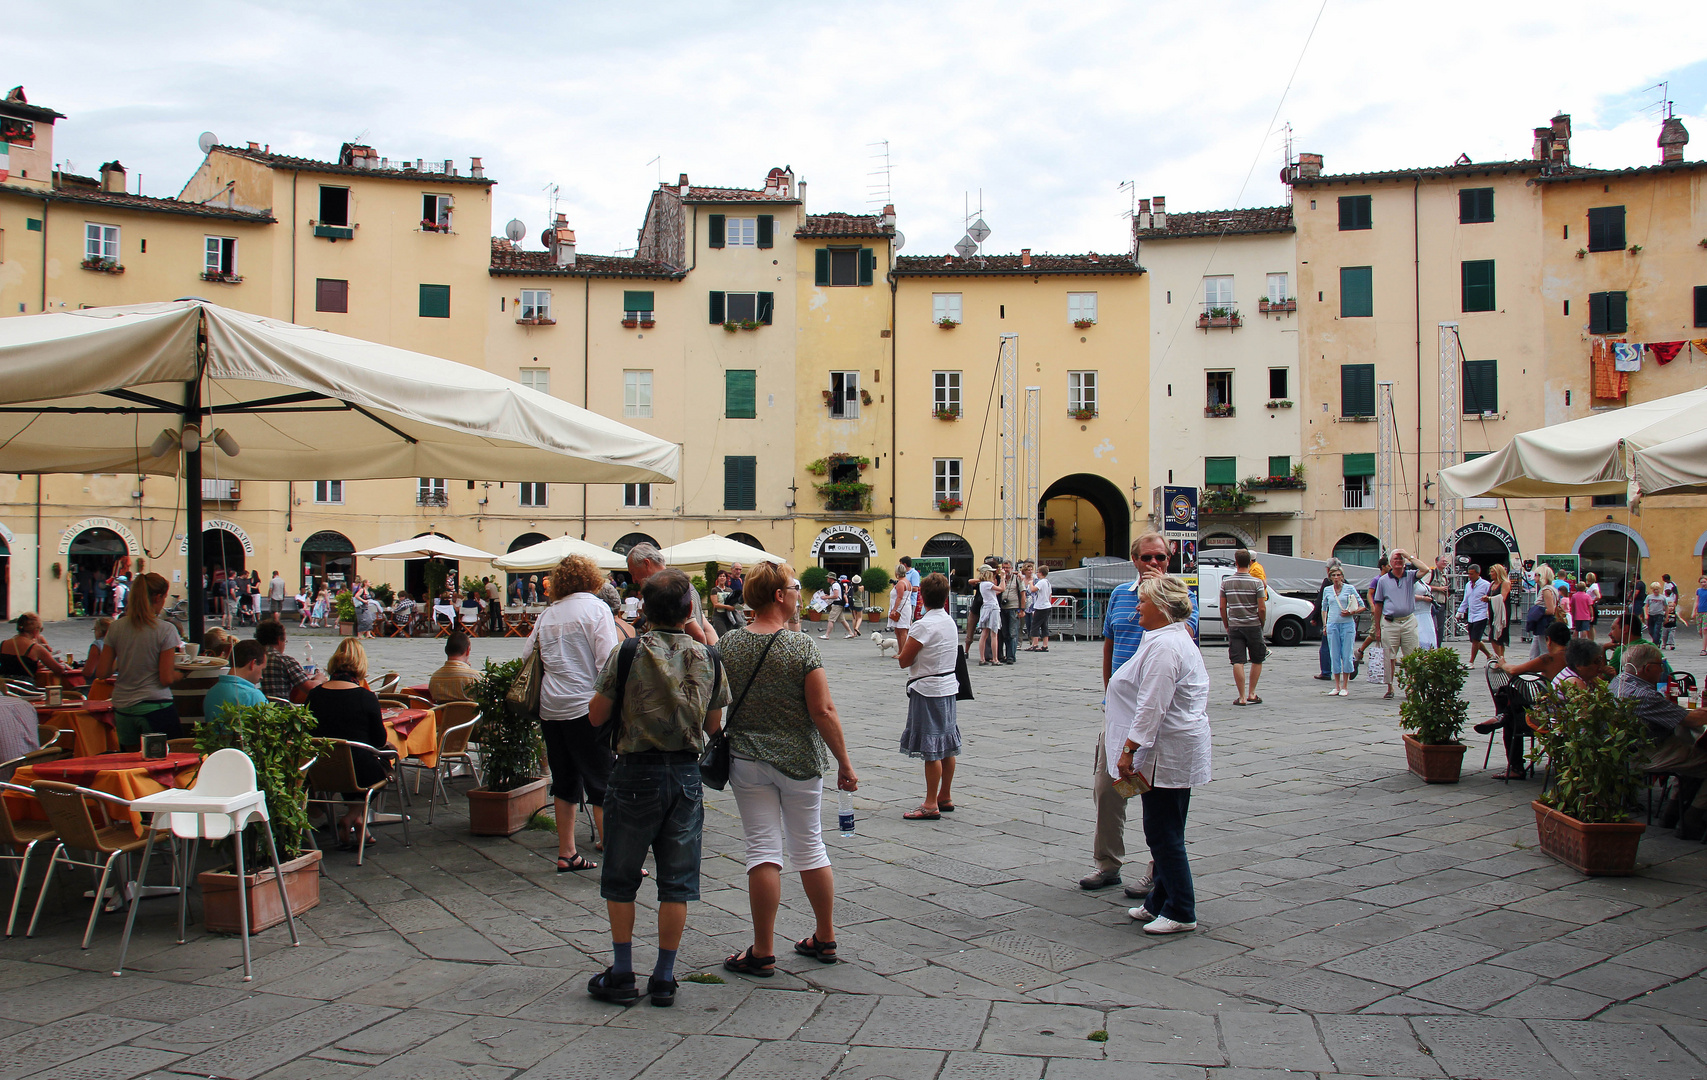 Lucca: Piazza dell'anfiteatro